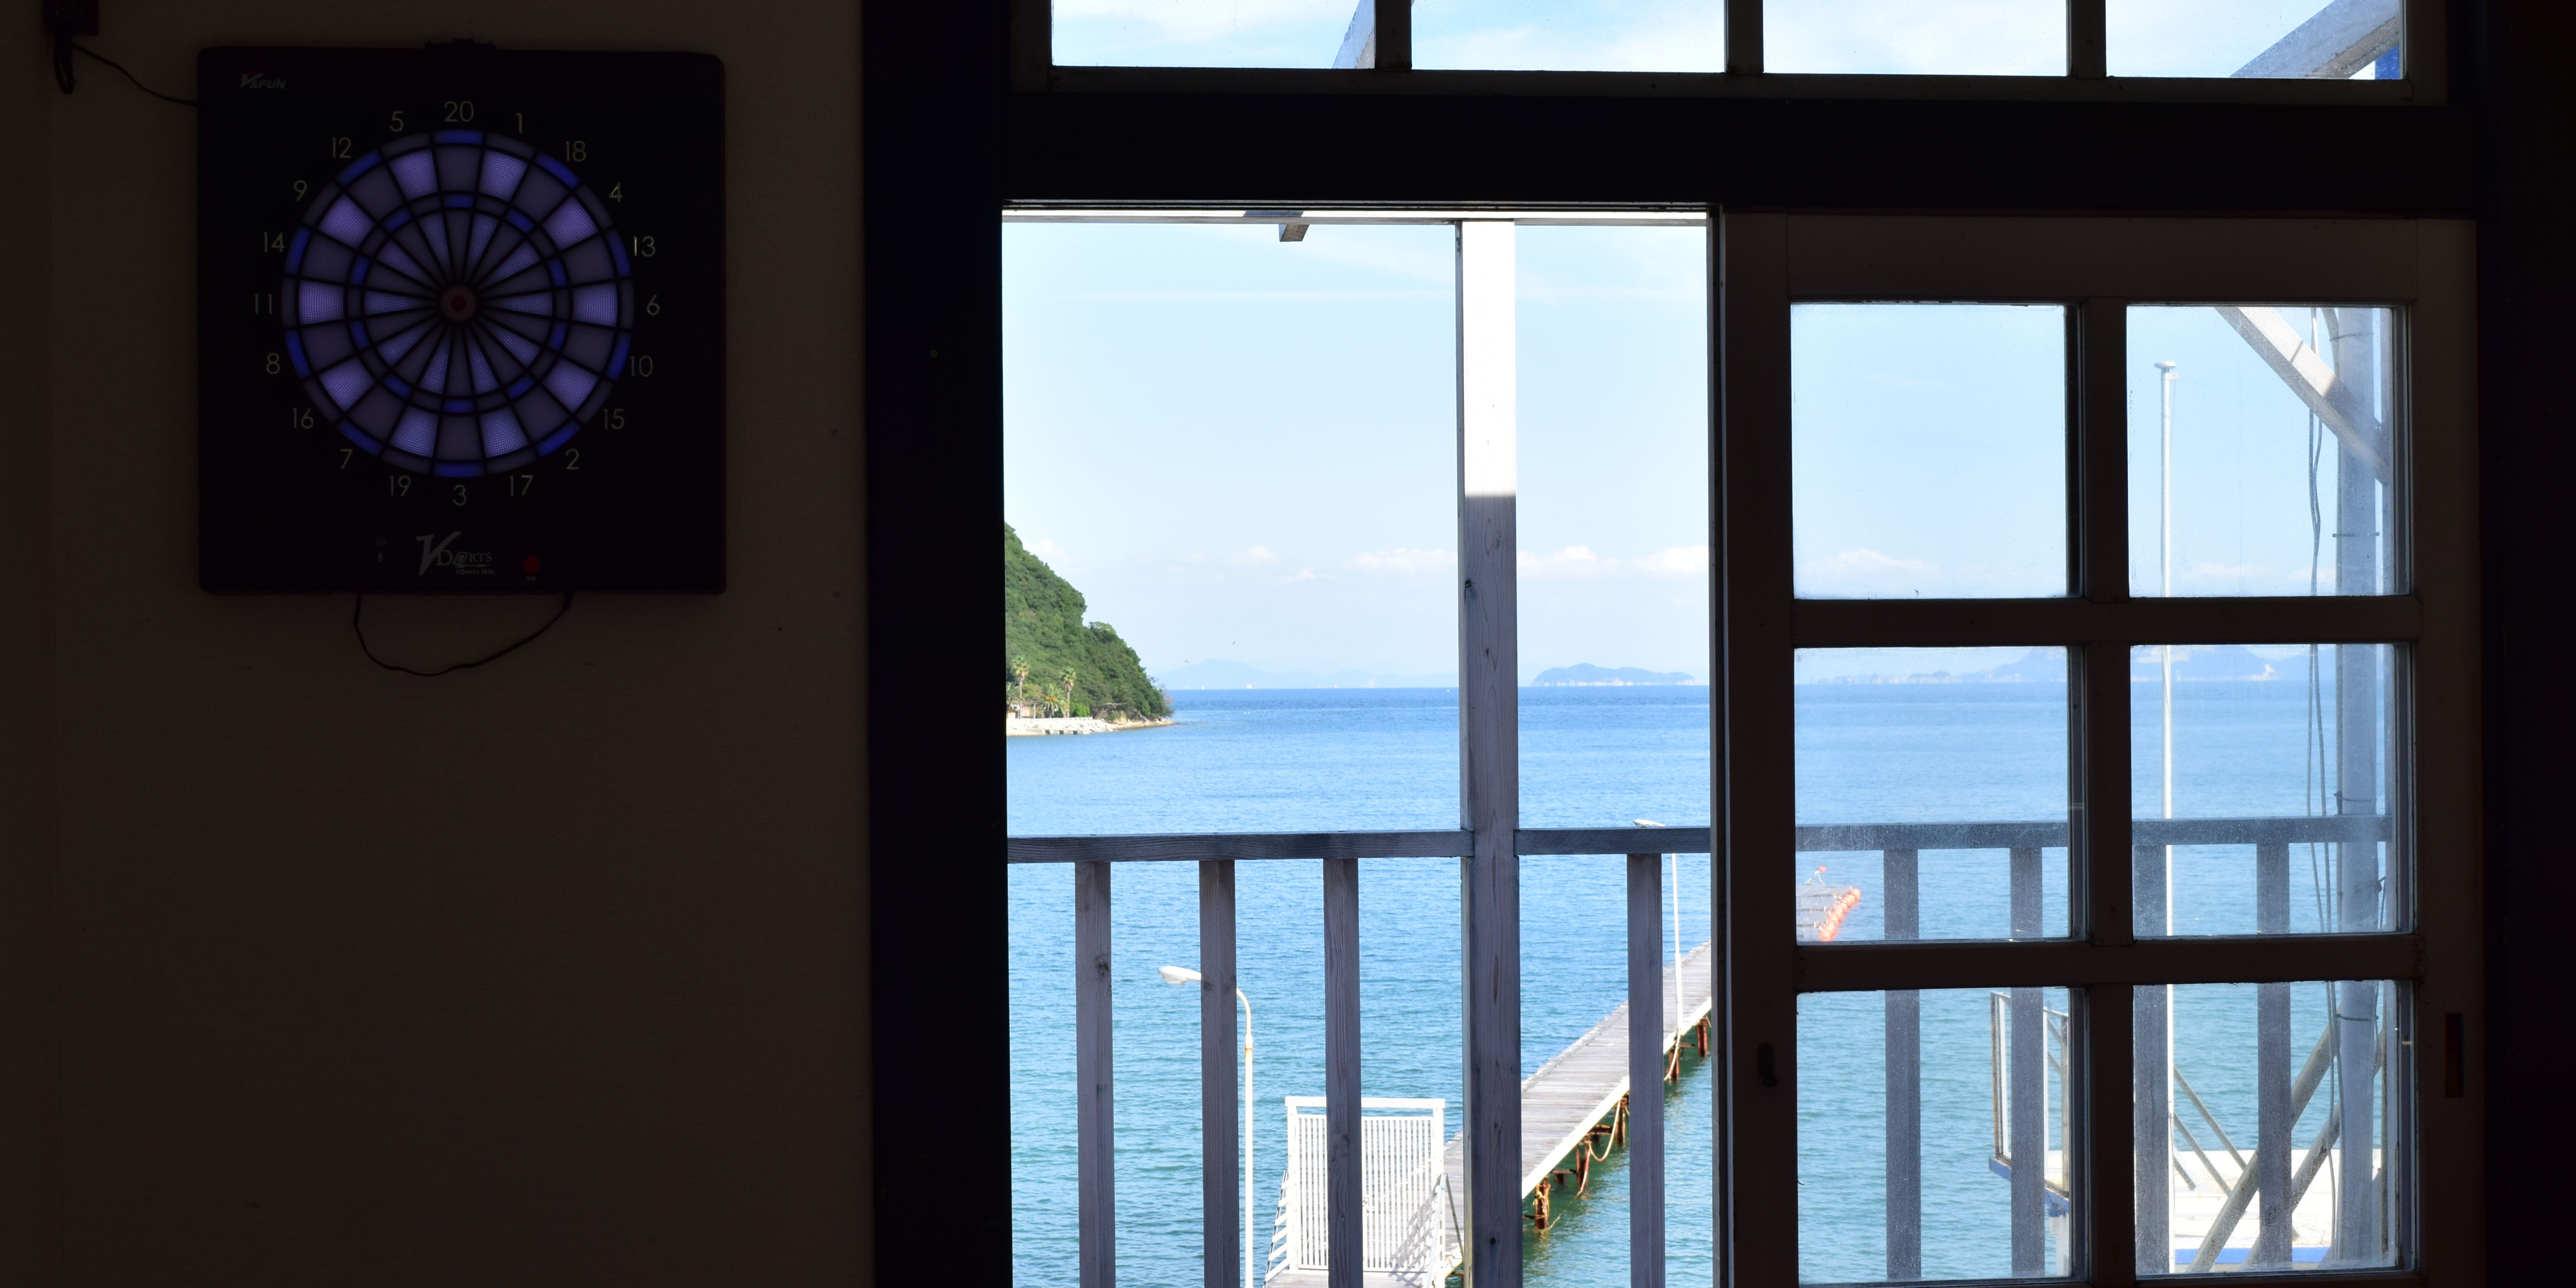 瀬戸内への旅行なら「シータイガーアイランドイン小豆島」のへ。海が見えるお部屋「ナイトプール」